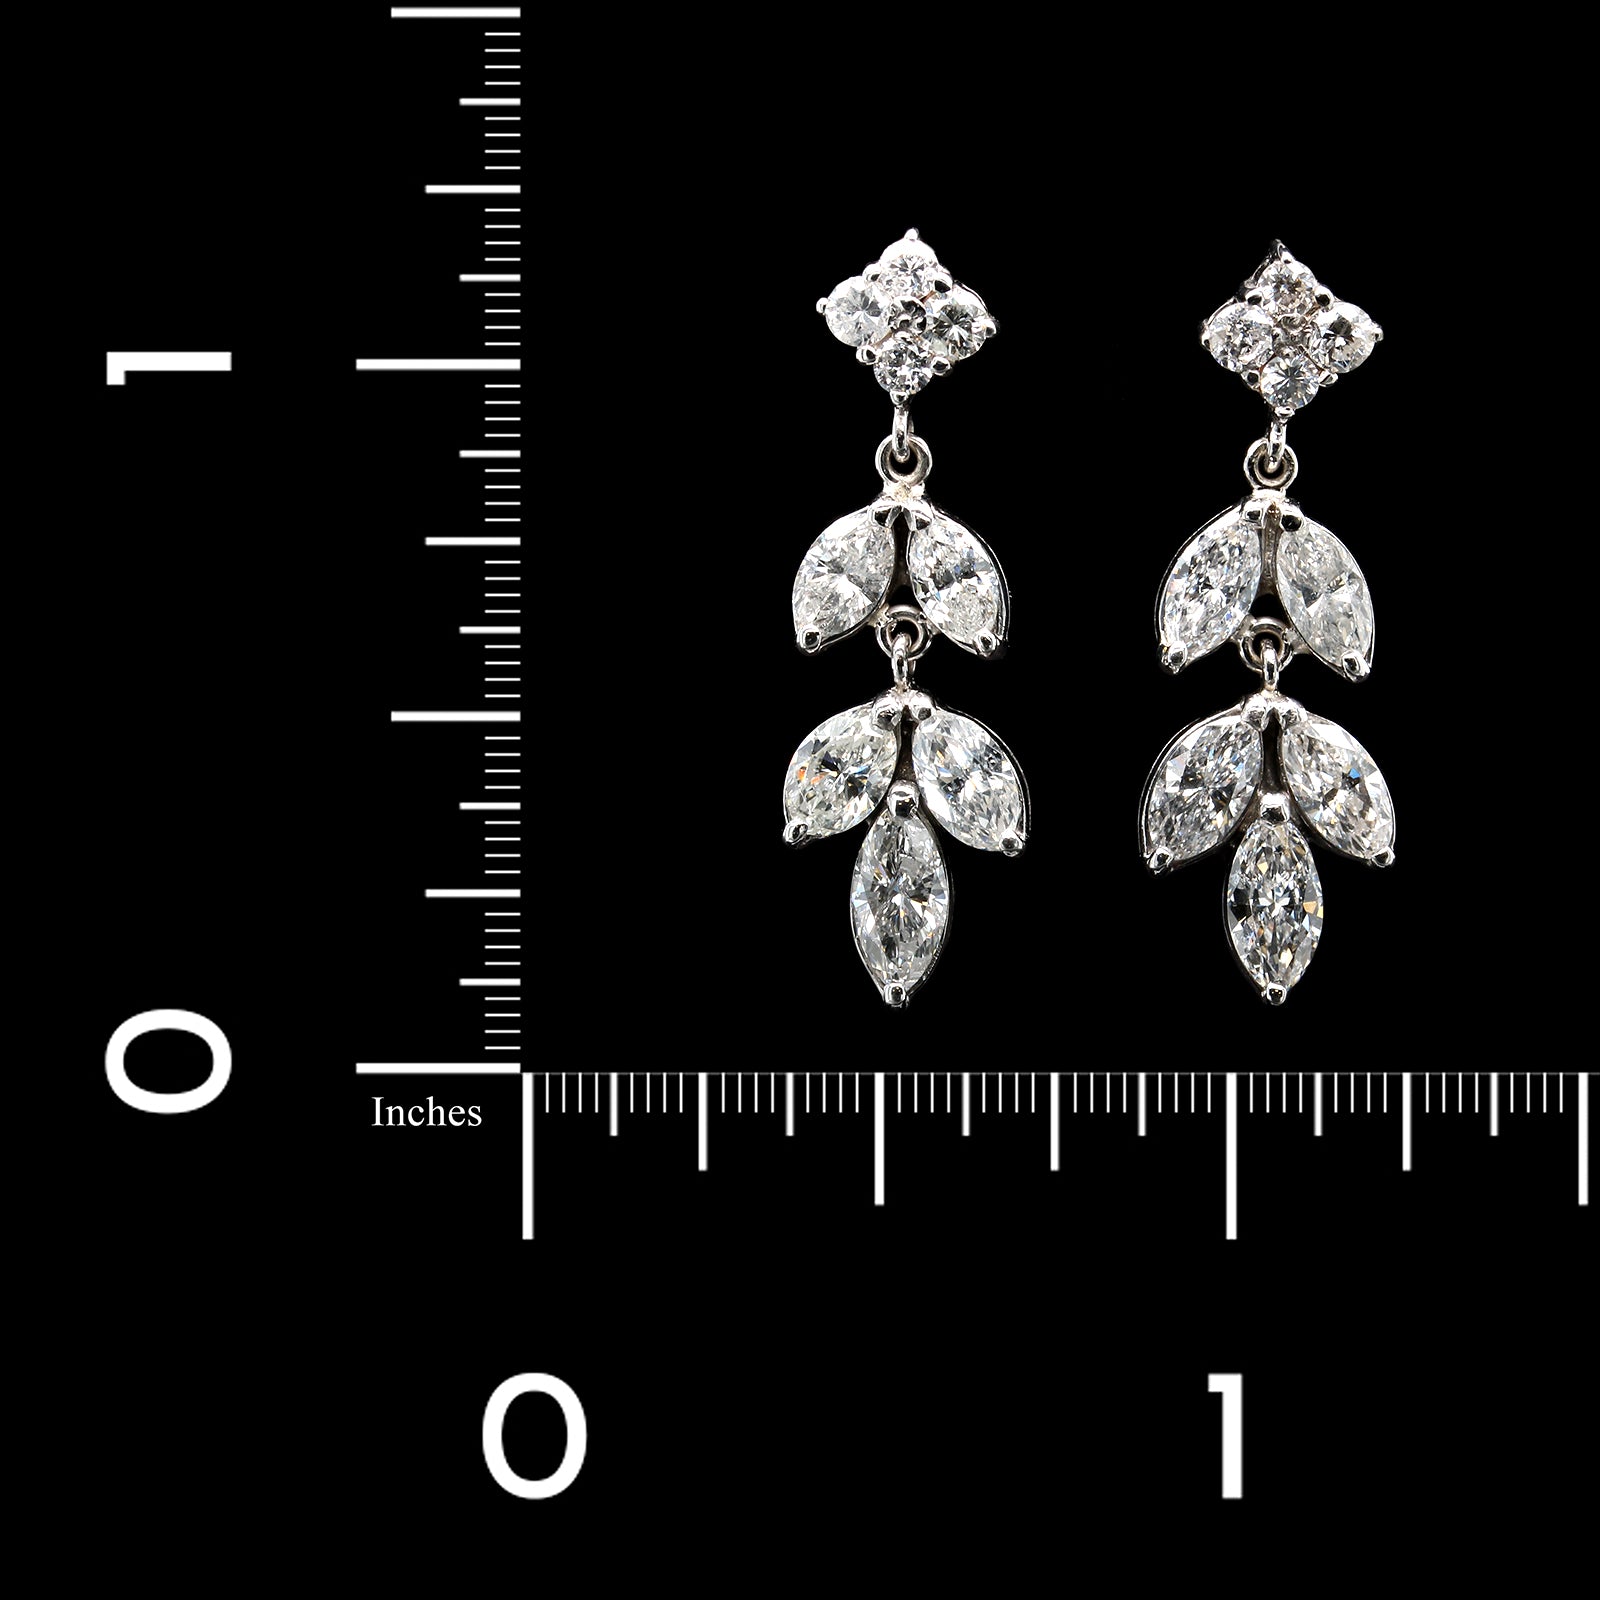 14K White Gold Estate Diamond Earrings